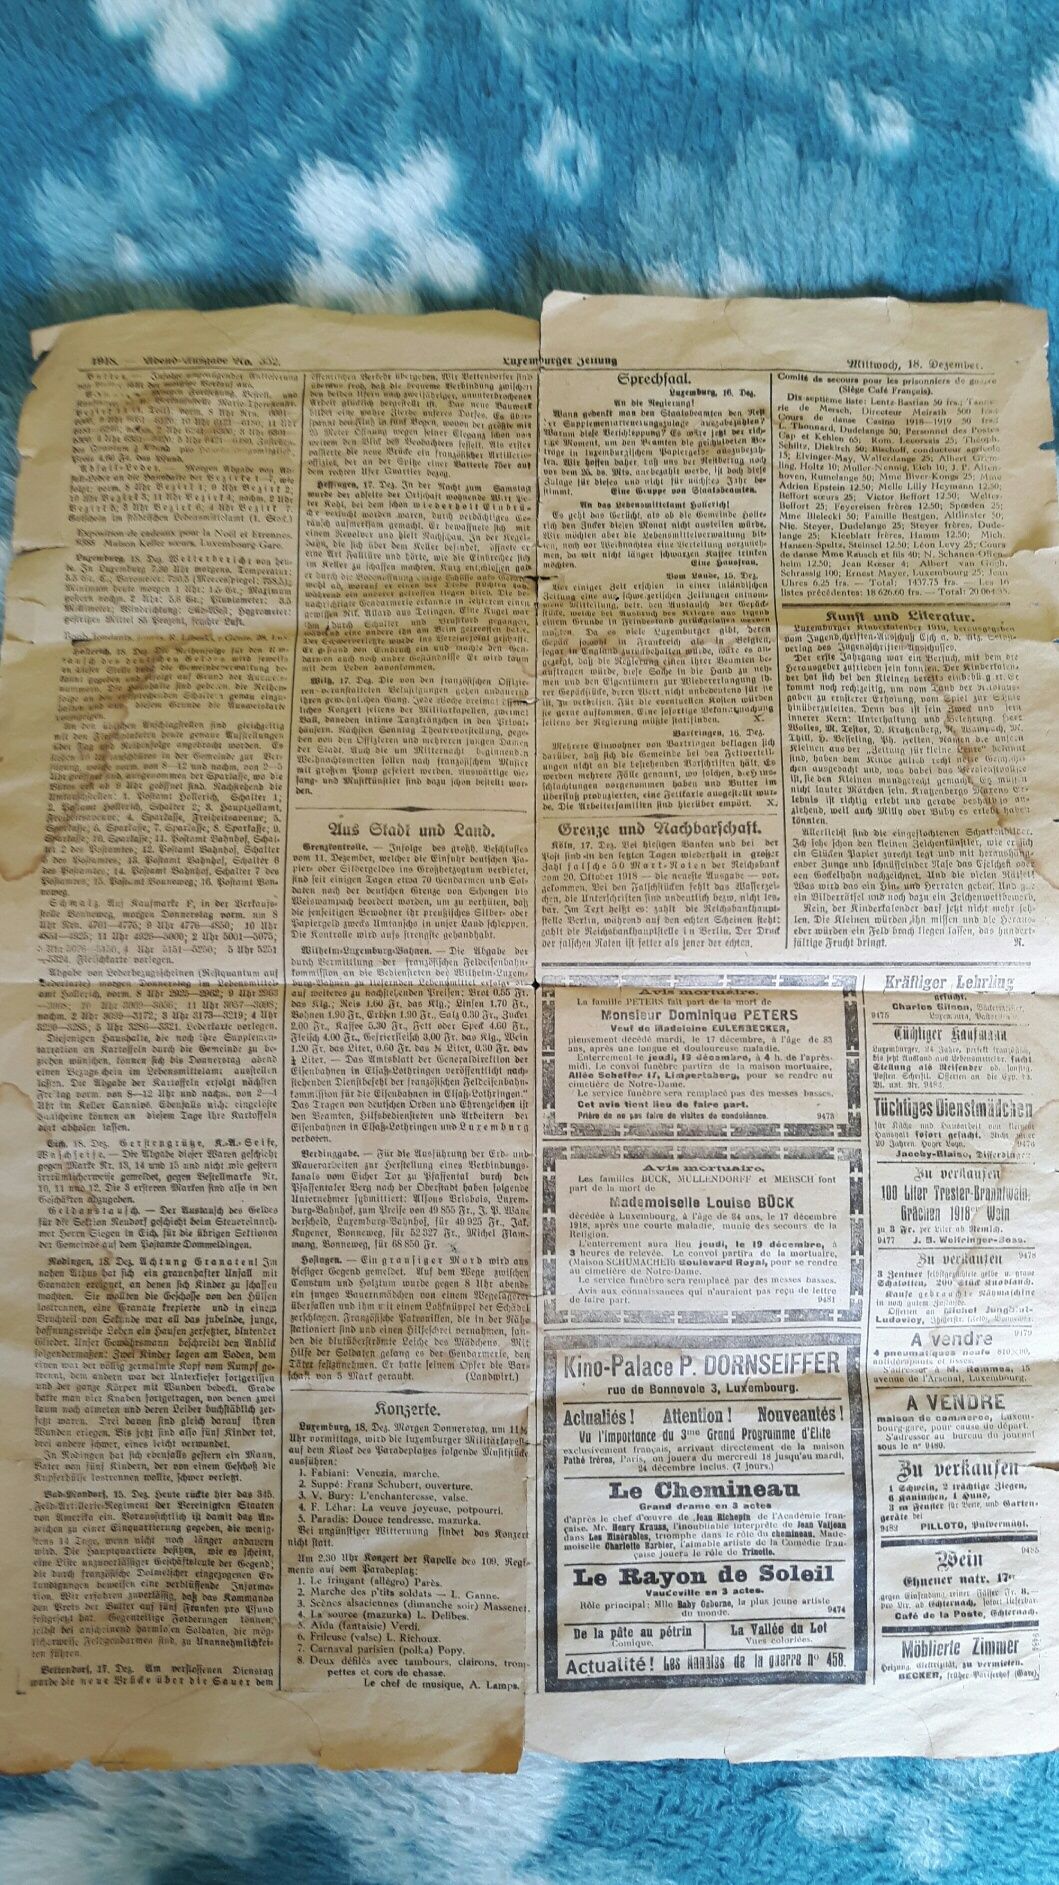 Stara Zabytkowa Gazeta Luksemburg z 1918 roku